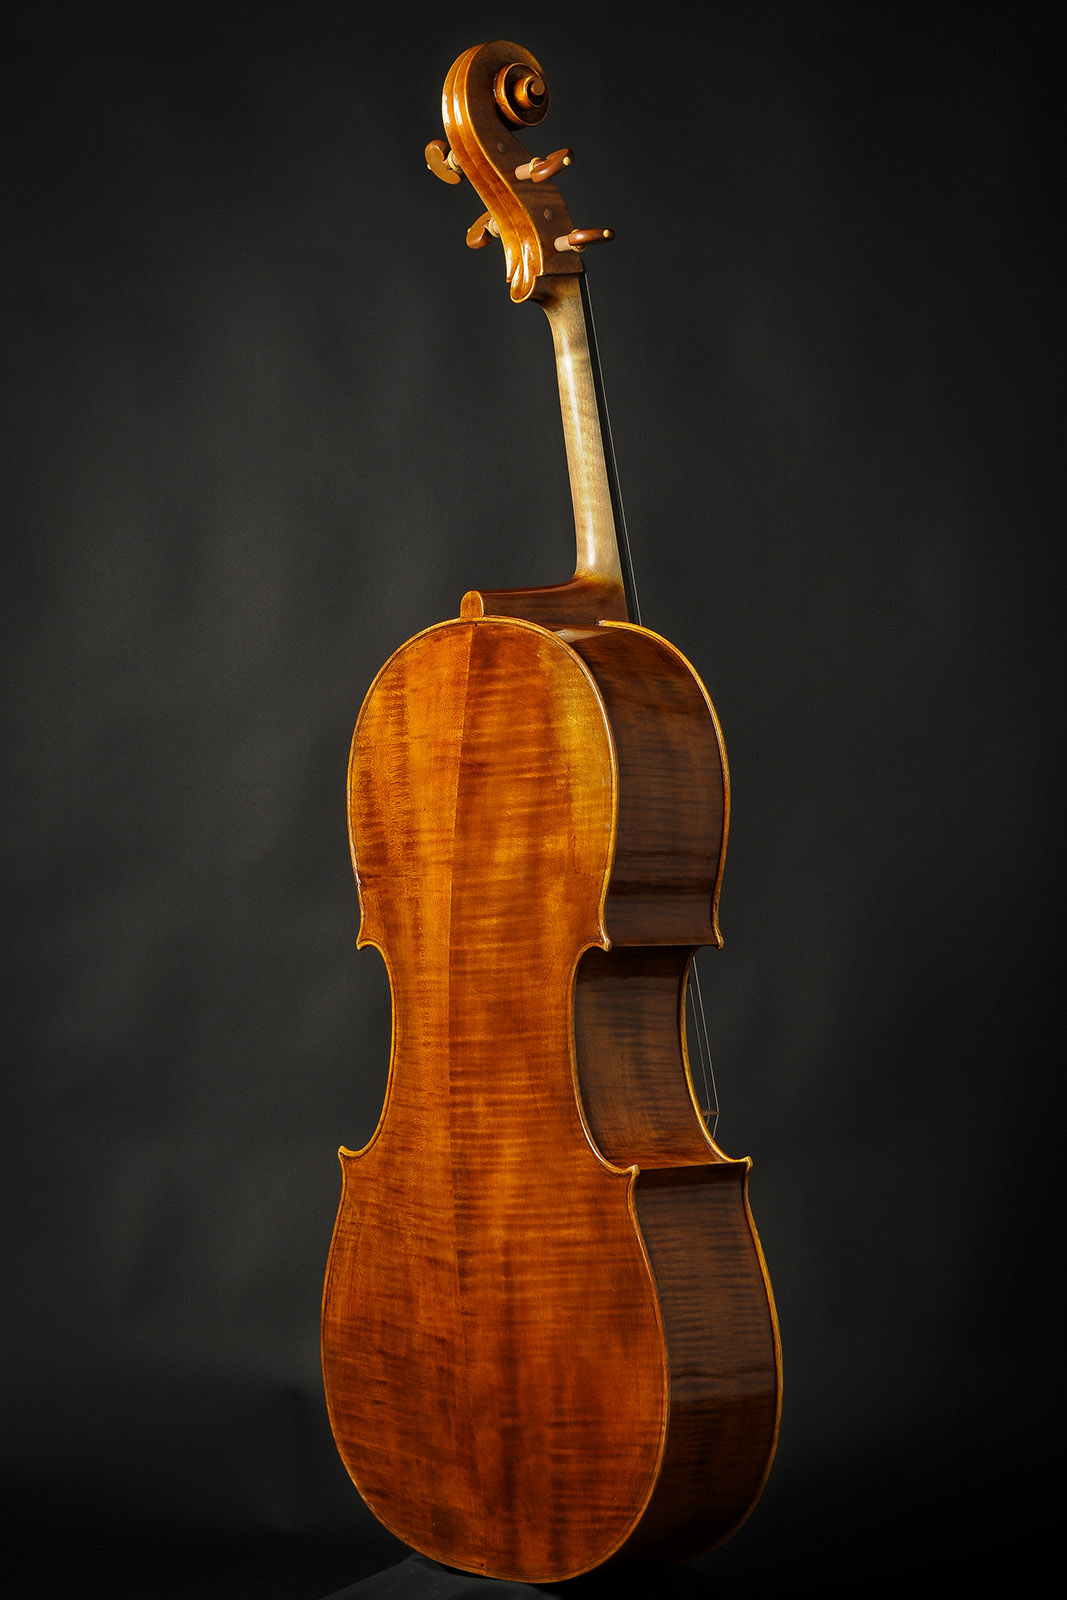 Antonio Stradivari Cremona 1712 “Tullo Ostilio“ - Image 4